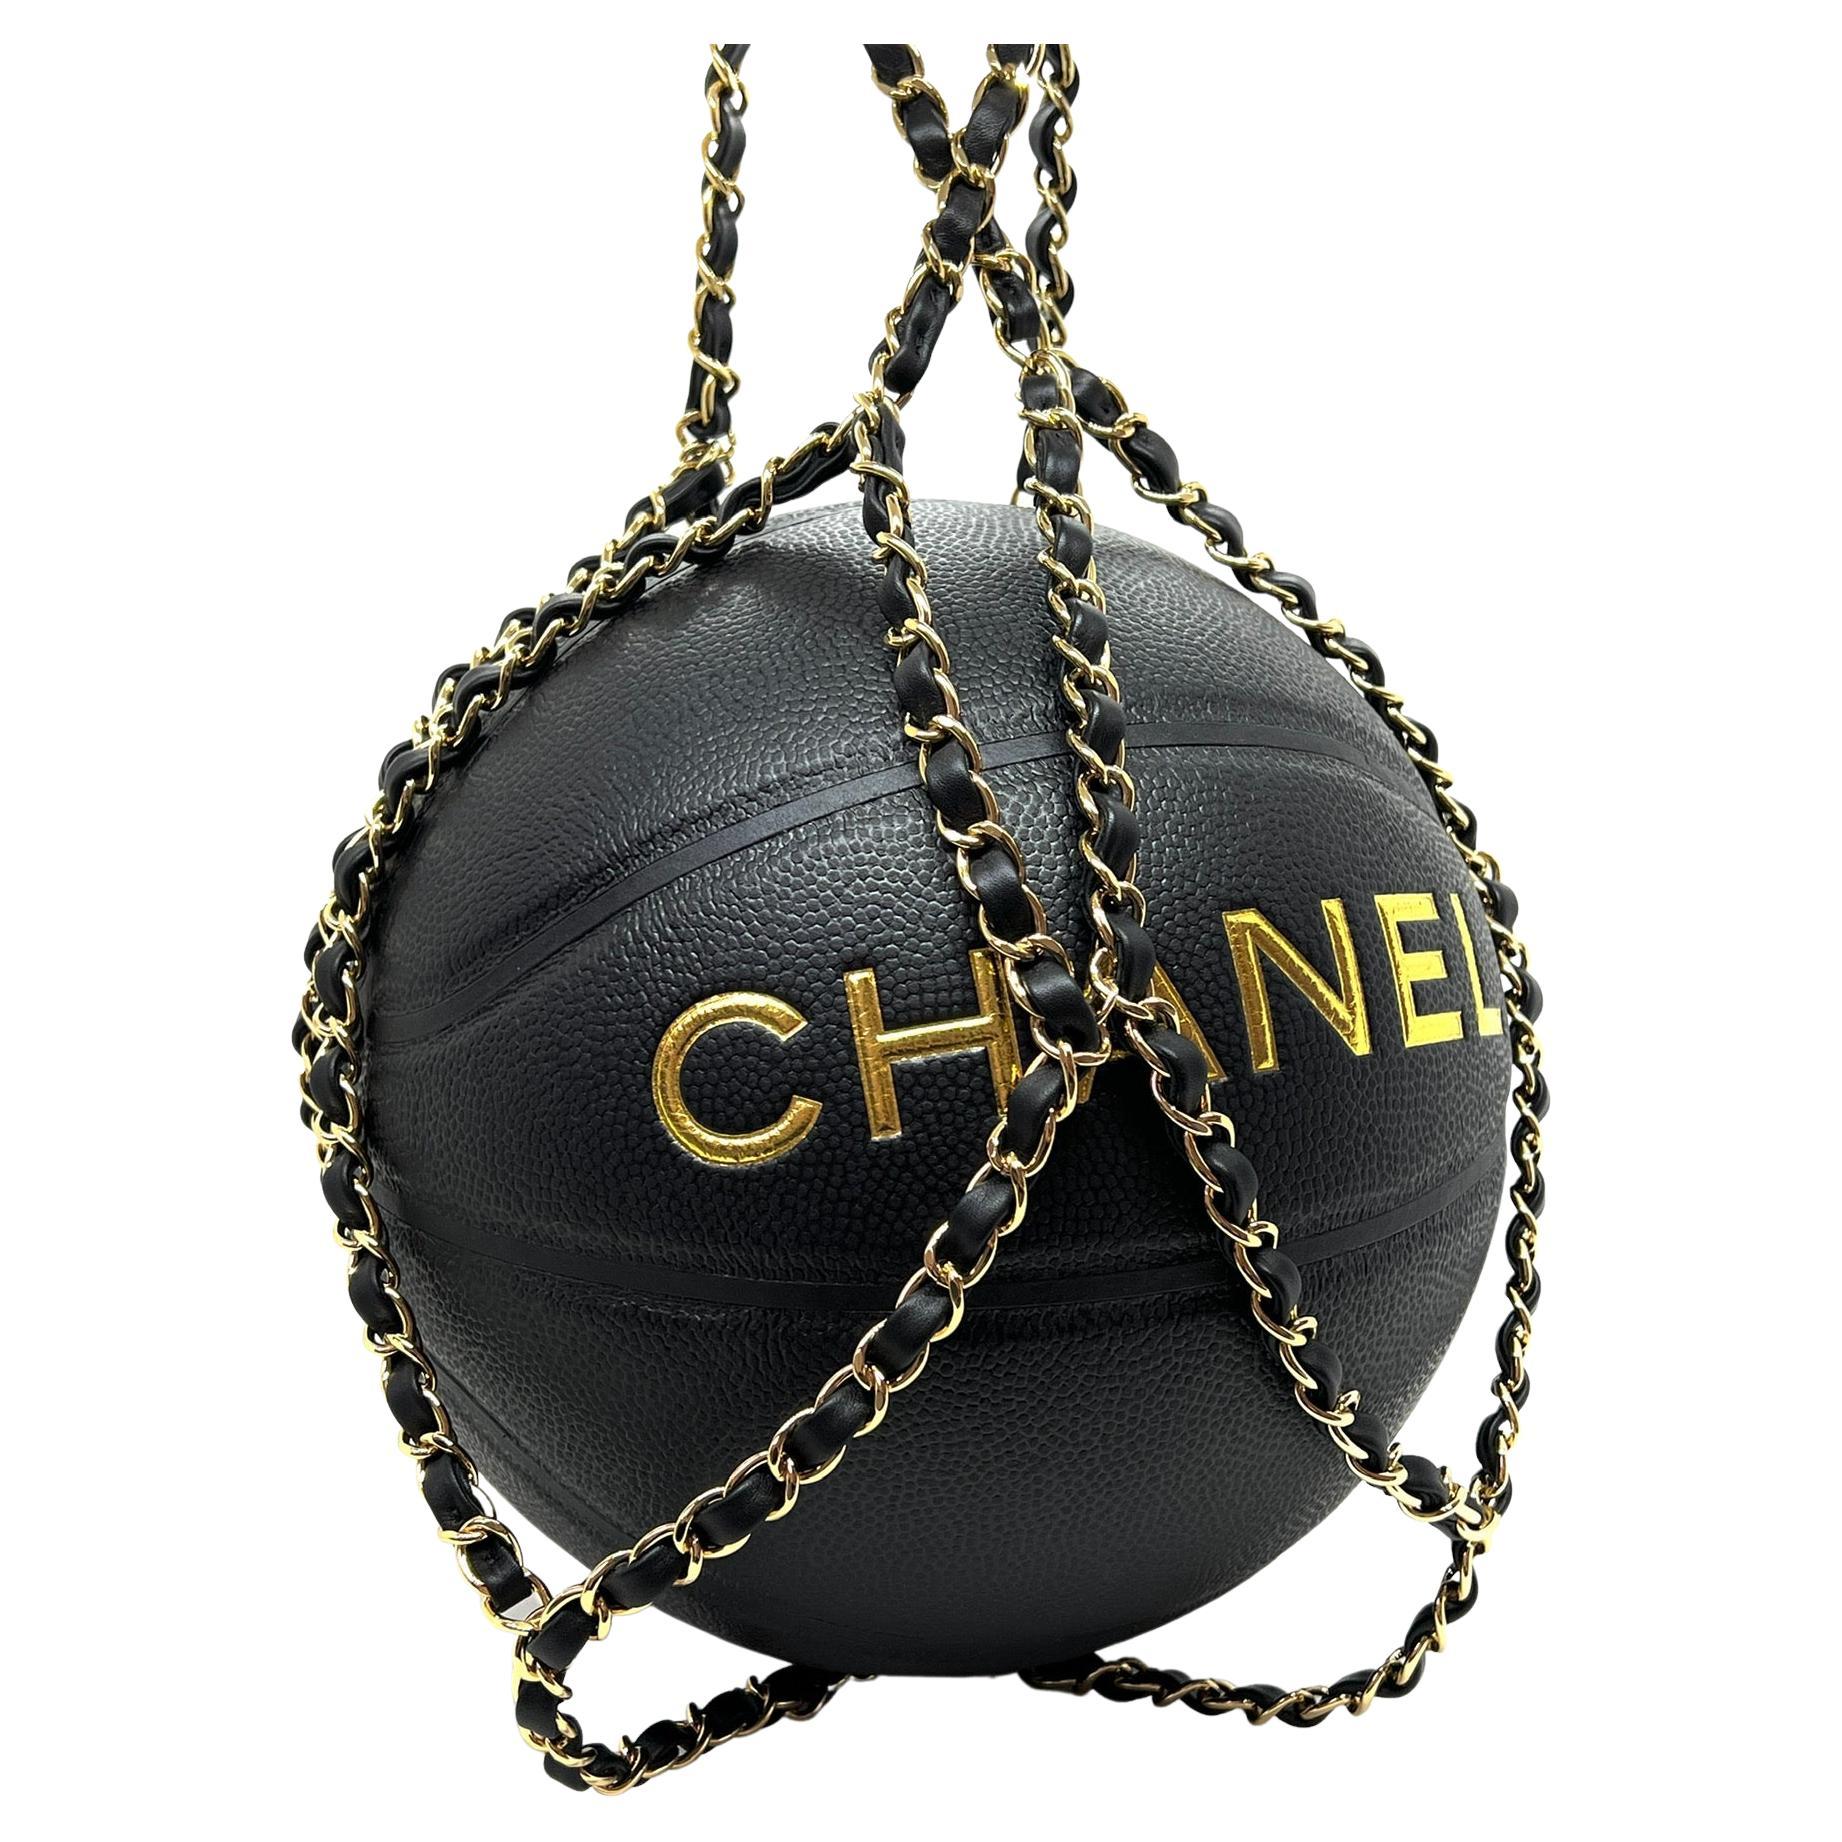 Chanel Basketball Bag - 2 For Sale on 1stDibs  chanel basketball purse, basketball  chanel bag, channel basket ball bag